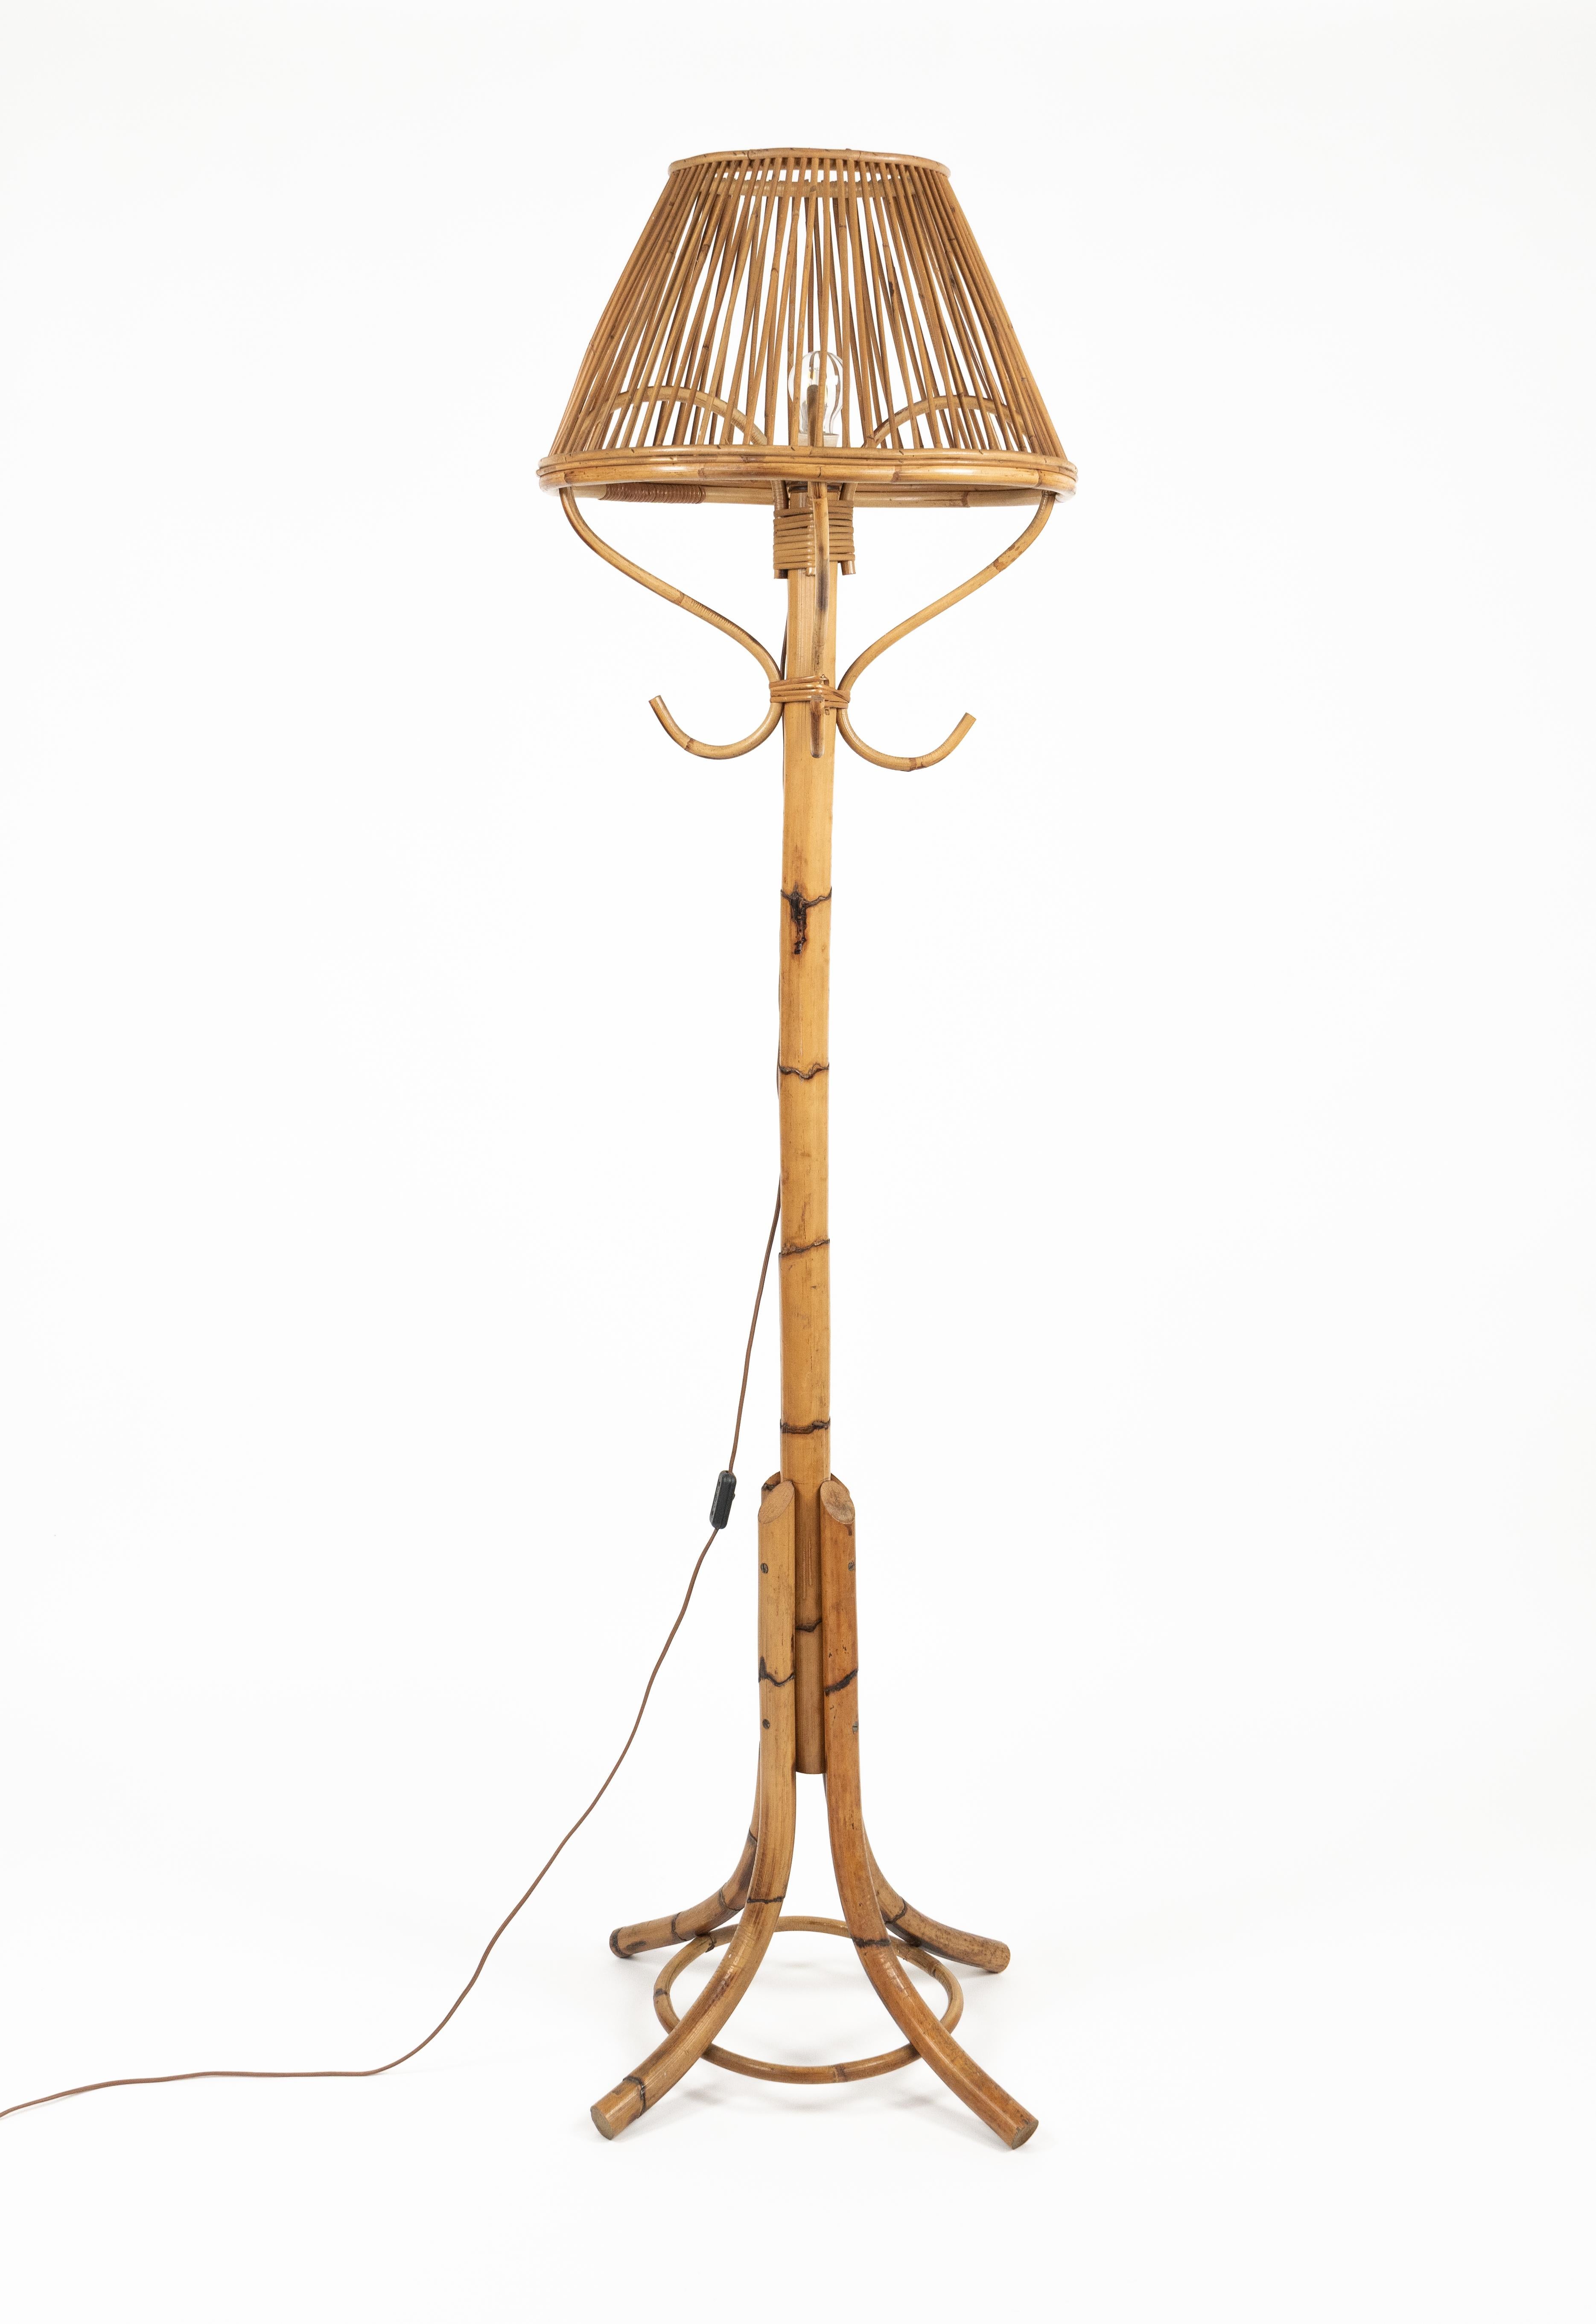 Tolle Stehlampe aus Bambus und Rattan im Stil von Franco Albini aus der Mitte des Jahrhunderts.  

Hergestellt in Italien in den 1960er Jahren.

Eine schöne Stehlampe, die perfekt funktioniert, aber vor allem in jedem Raum eine erstaunliche optische